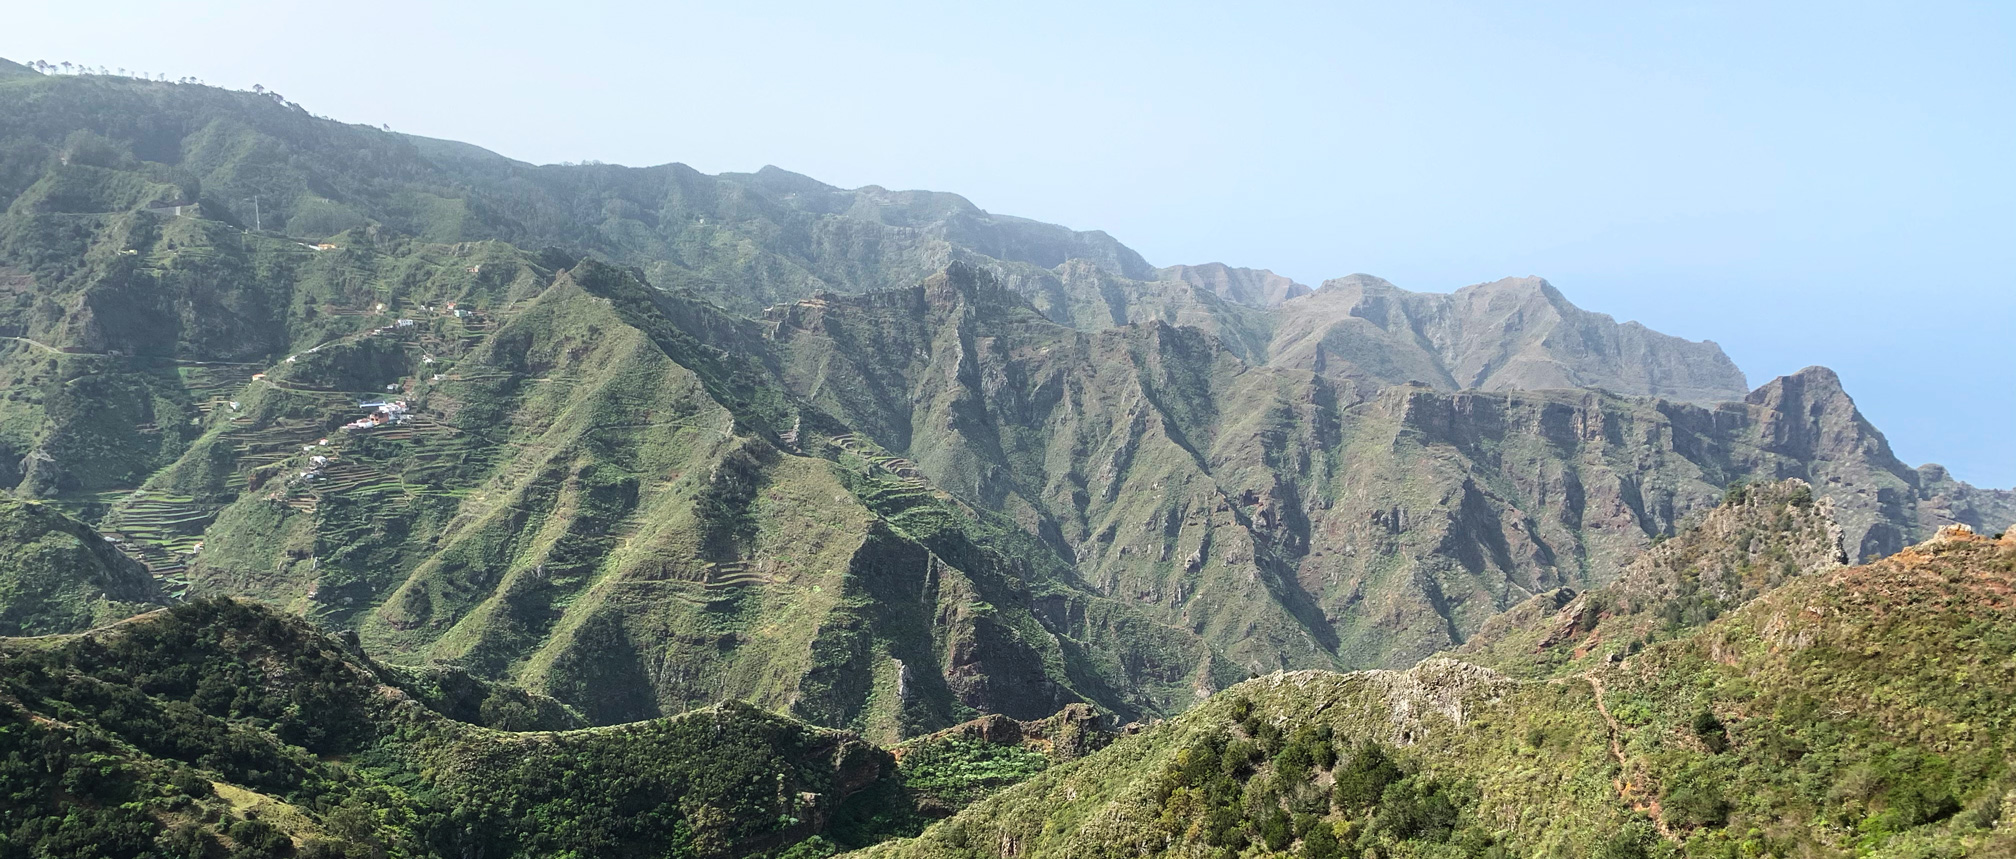 Illas Canarias, Tenerife: Parque Rural de Anaga. Ruteiro circular de Las Carboneras - Chinamada